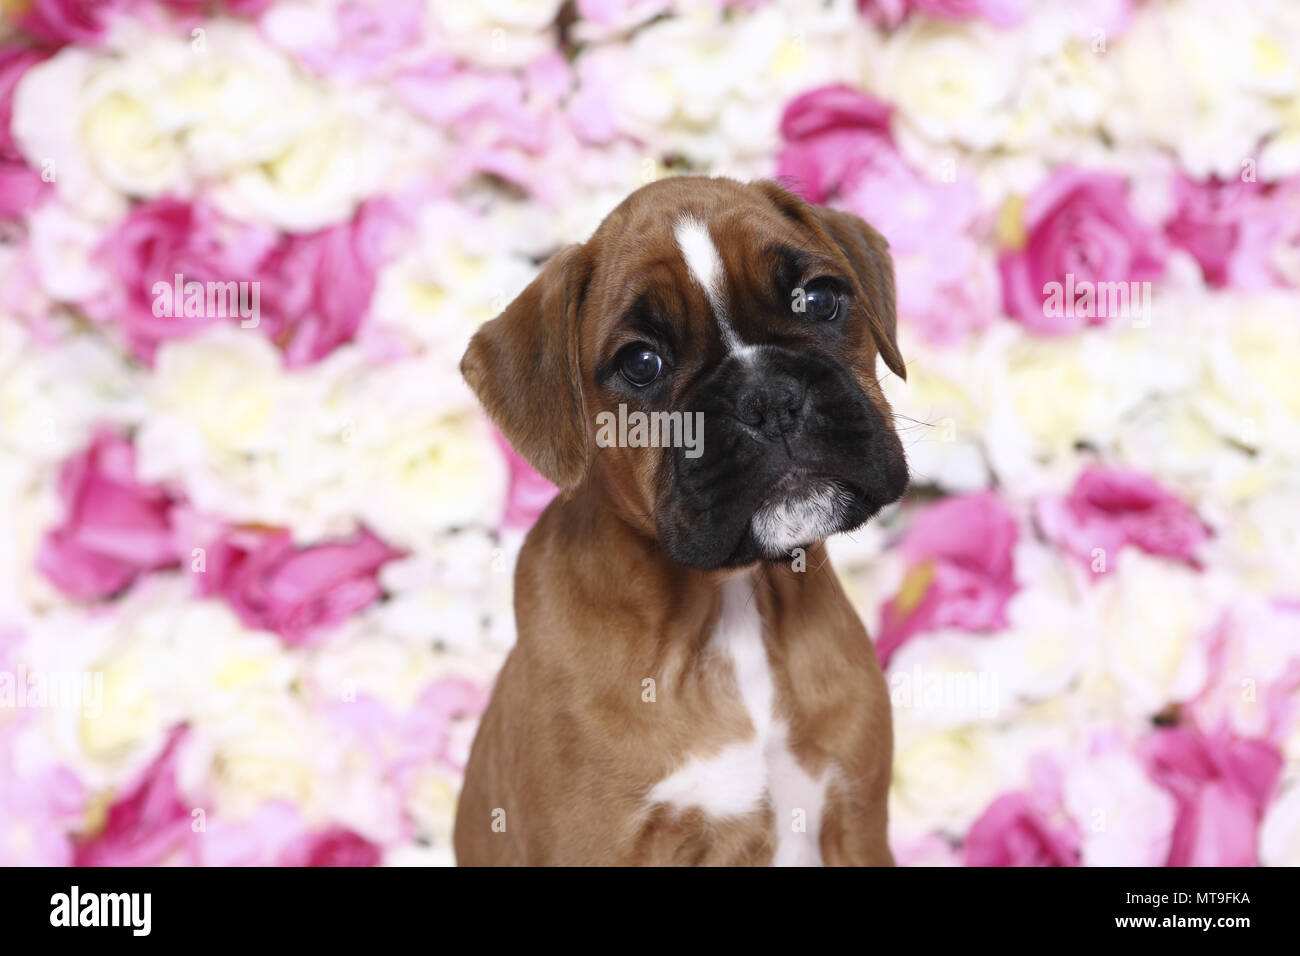 Boxeur allemand. Puppy (7 semaines) assis parmi les fleurs de rose, portrait. Studio photo. Allemagne Banque D'Images